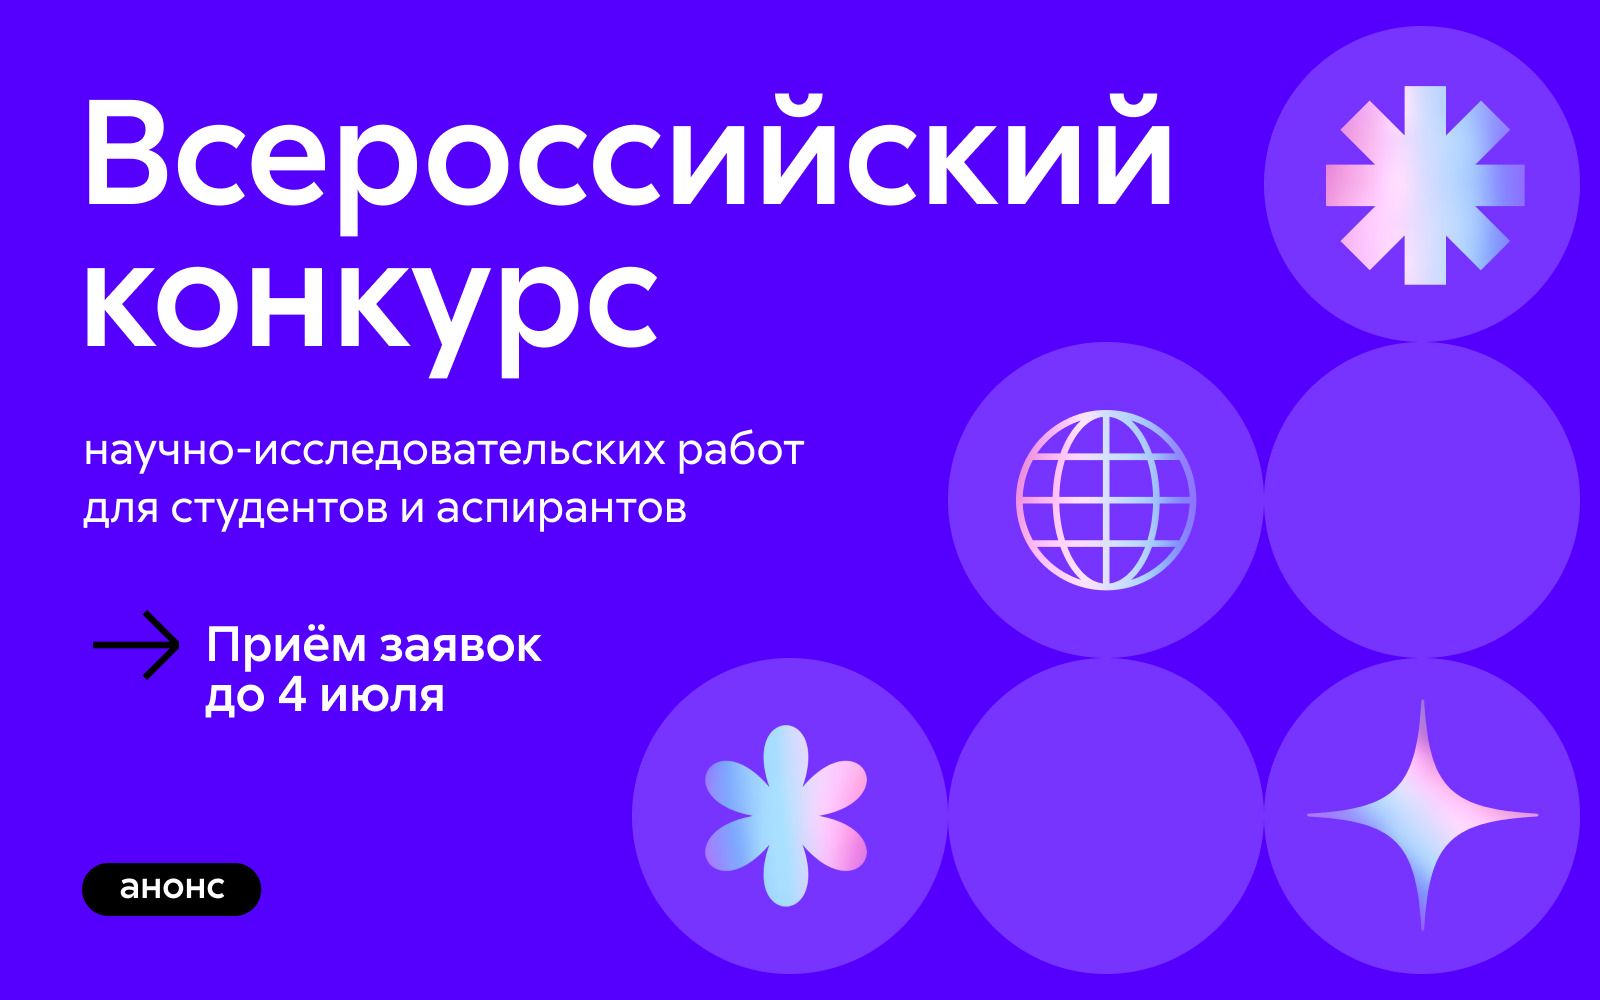 Всероссийский конкурс научно-исследовательских работ для студентов и аспирантов